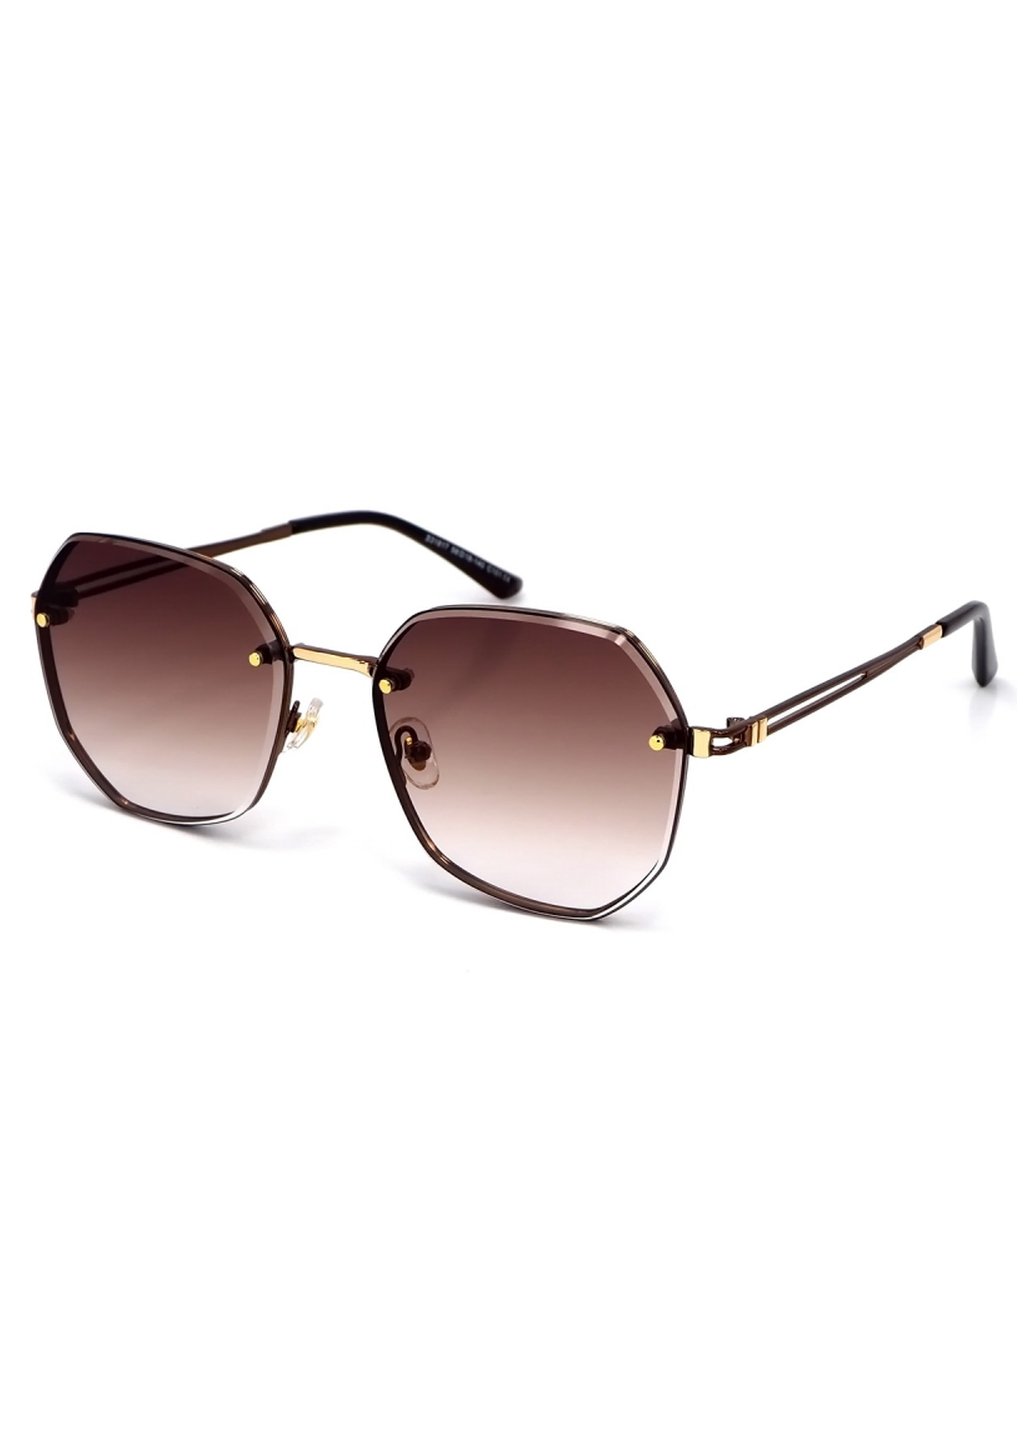 Купить Женские солнцезащитные очки Merlini с поляризацией S31817 117046 - Коричневый в интернет-магазине